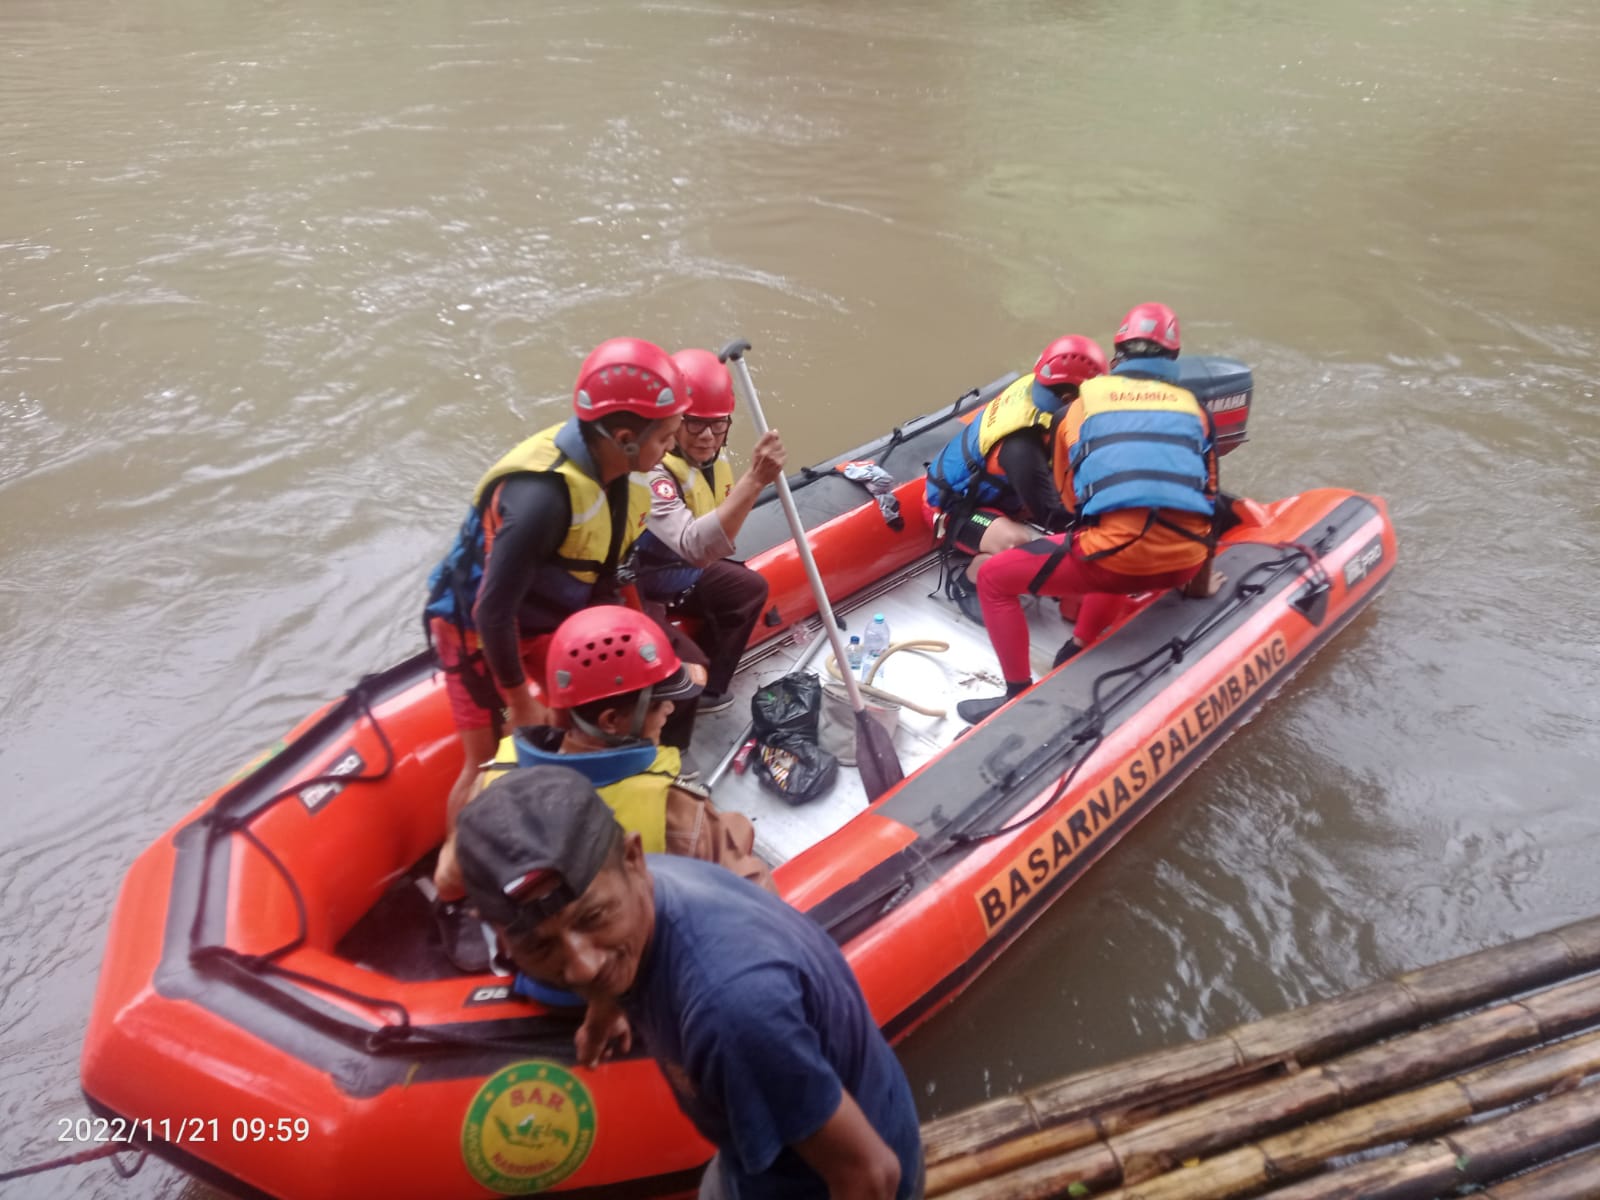 Tiga Hari Pencarian, Korban Tenggelam Belum Juga Ditemukan